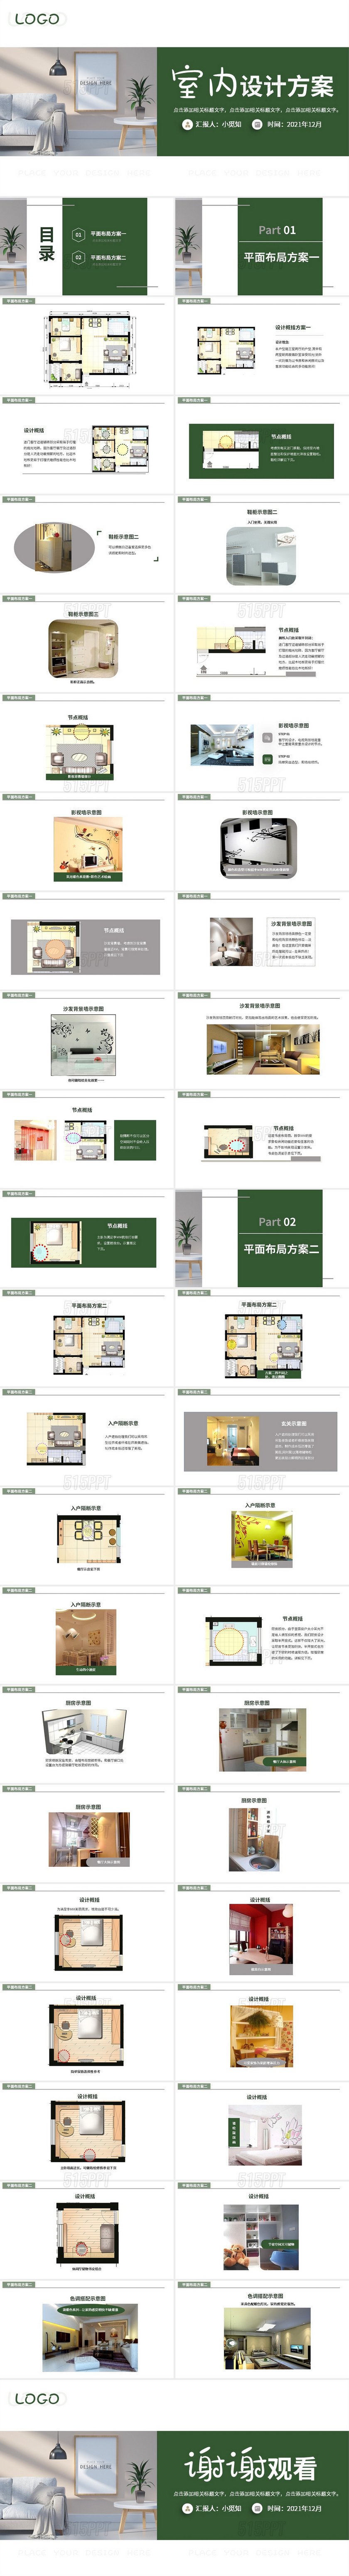 莫蓝绿清新风格室内设计方案PPT工作介绍PPT室内设计方案 (2)